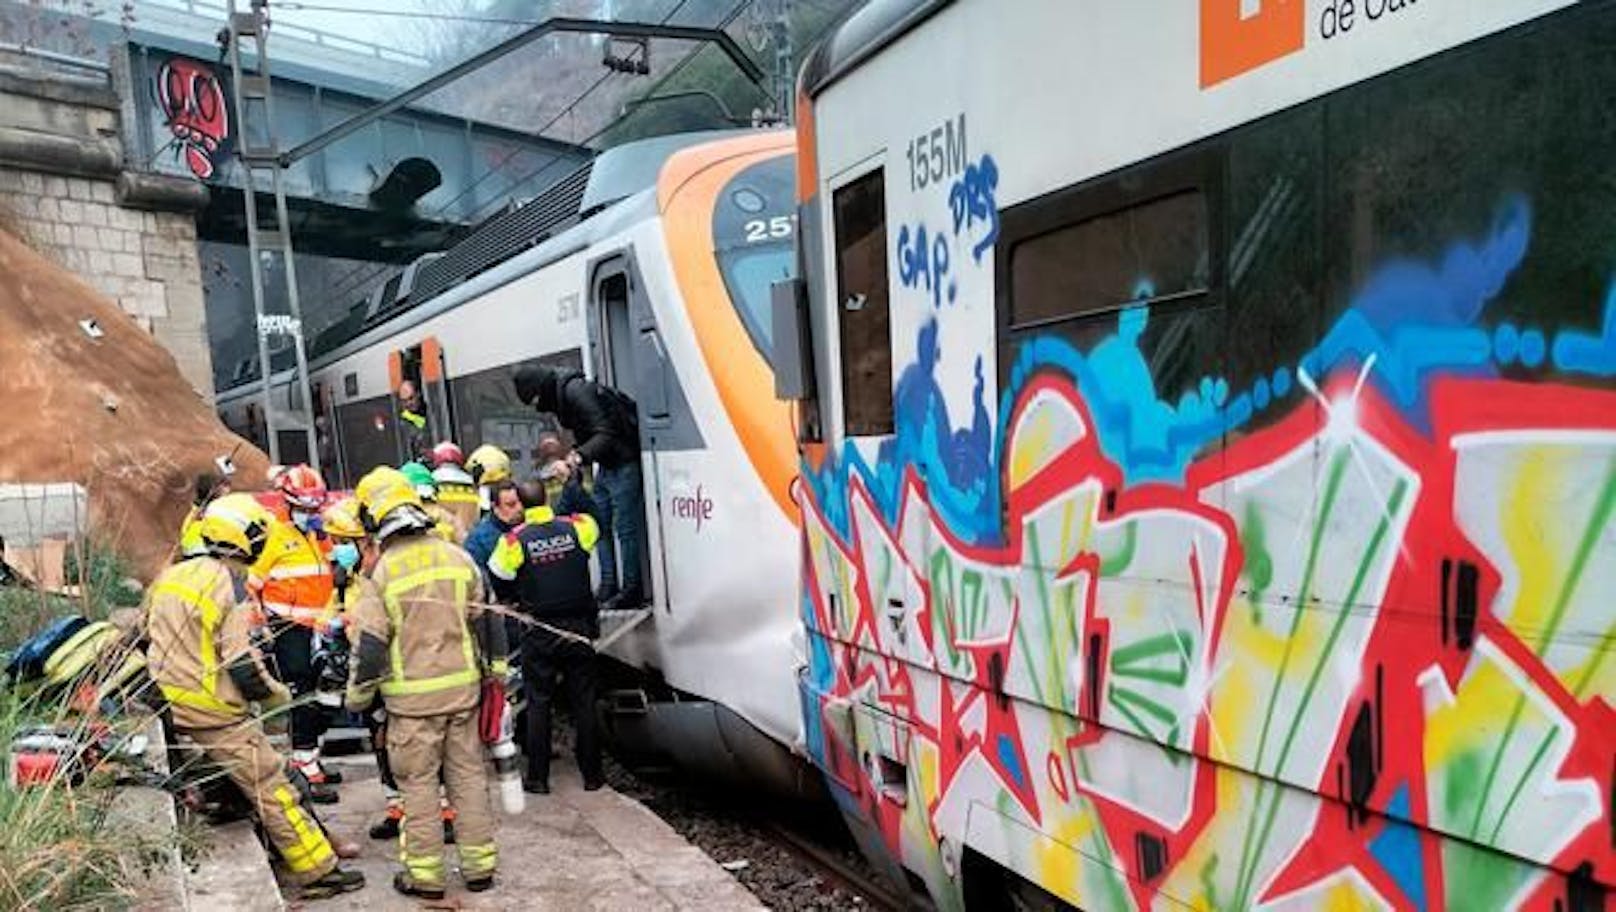 Mindestens 155 Verletzte nach Zugunglück in Spanien